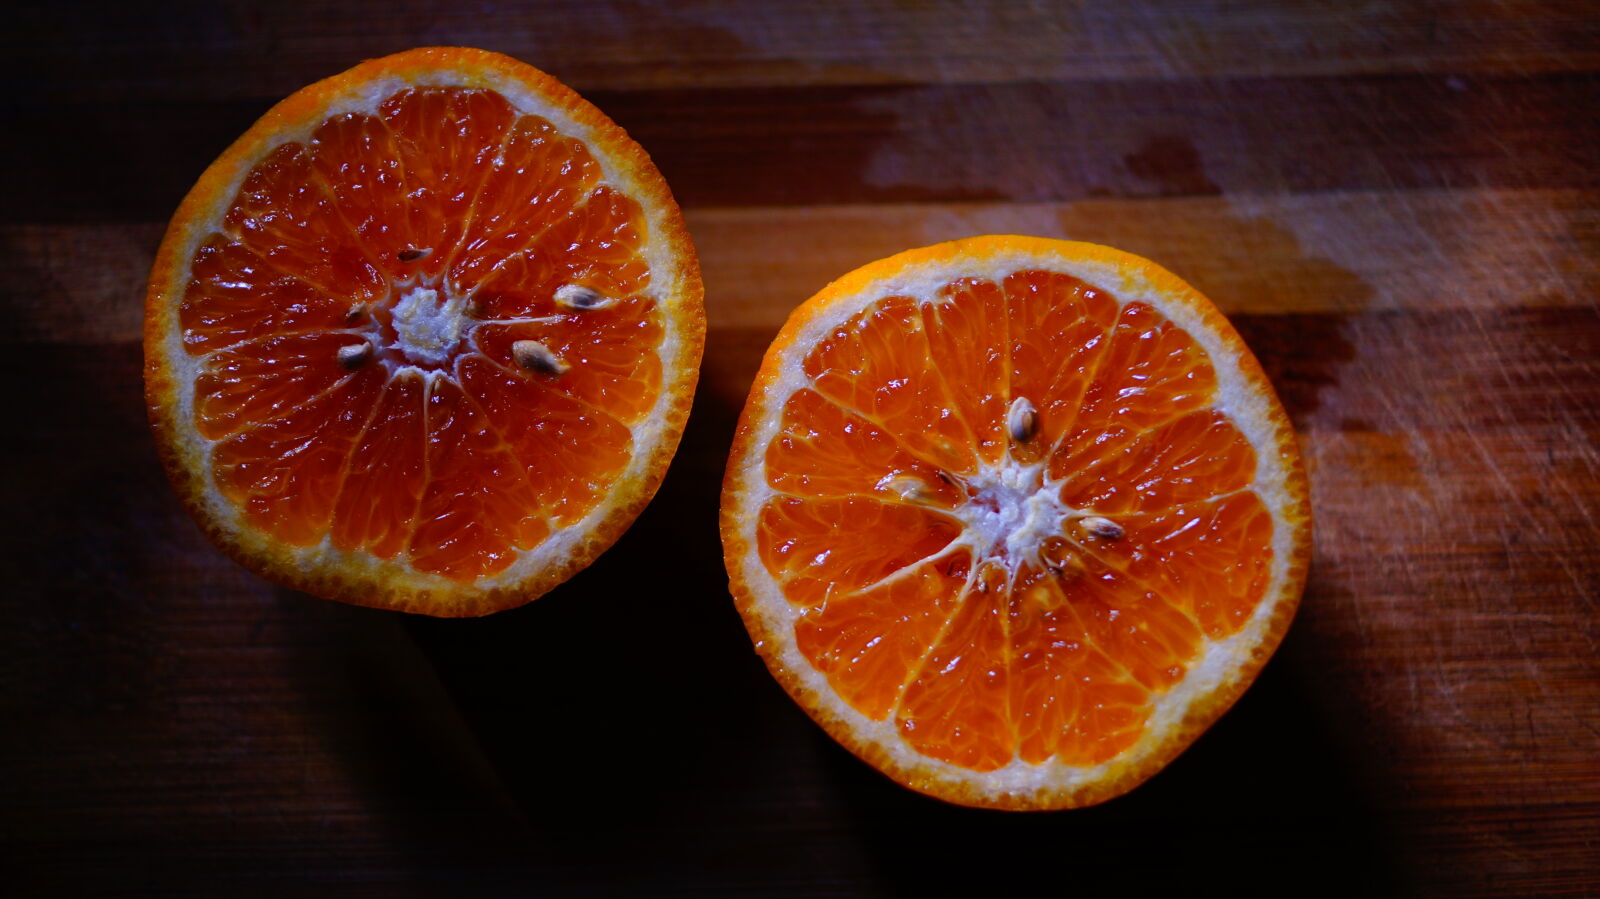 Sony SLT-A58 + Sony DT 35mm F1.8 SAM sample photo. Fruits, orange, orange, juice photography